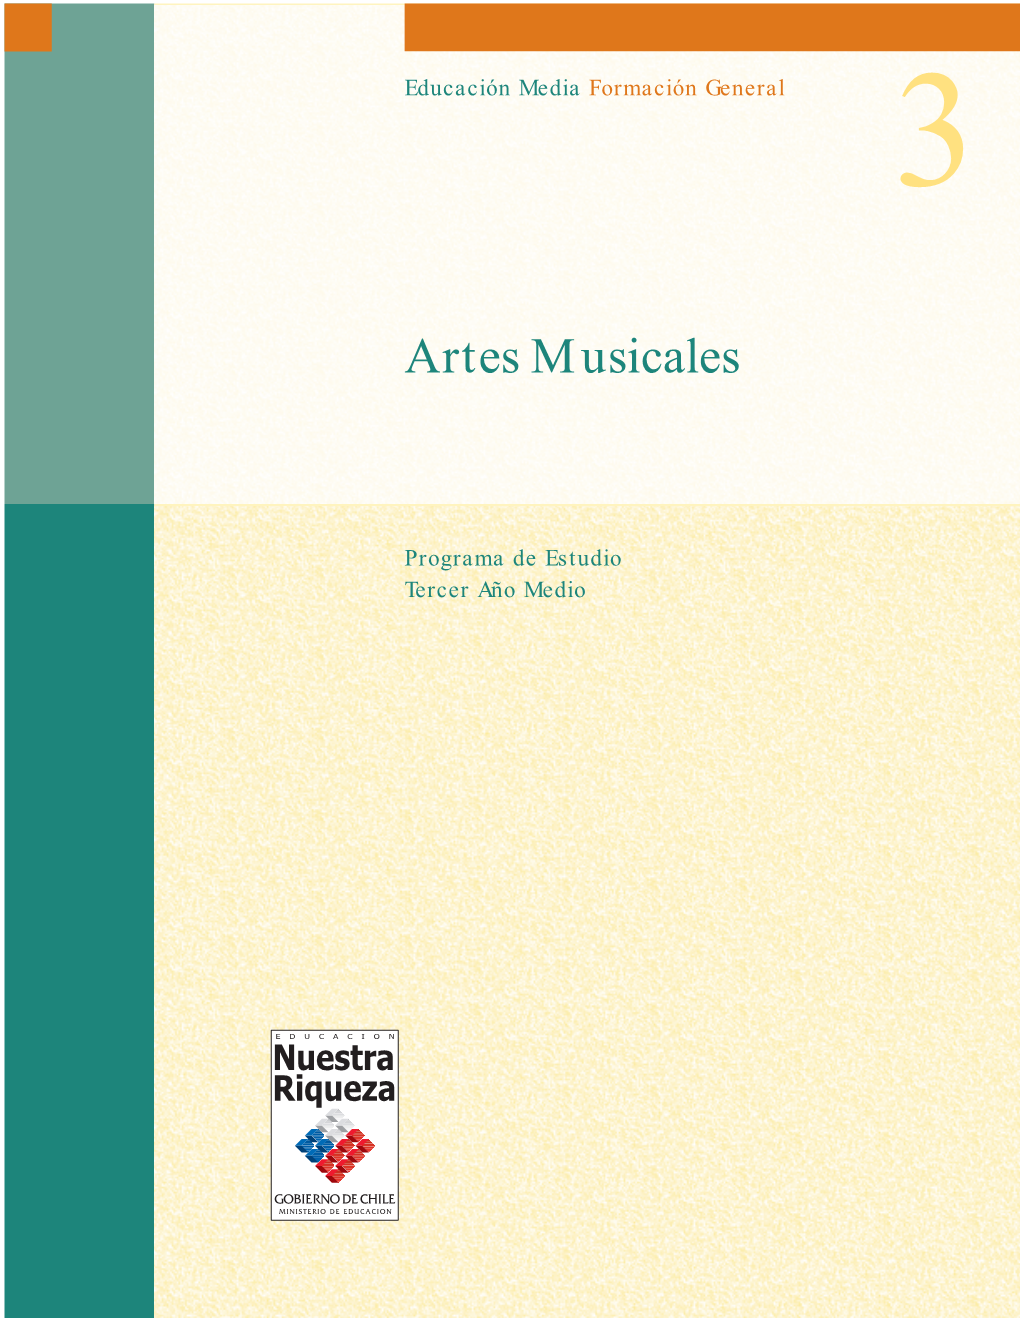 Artes Musicales